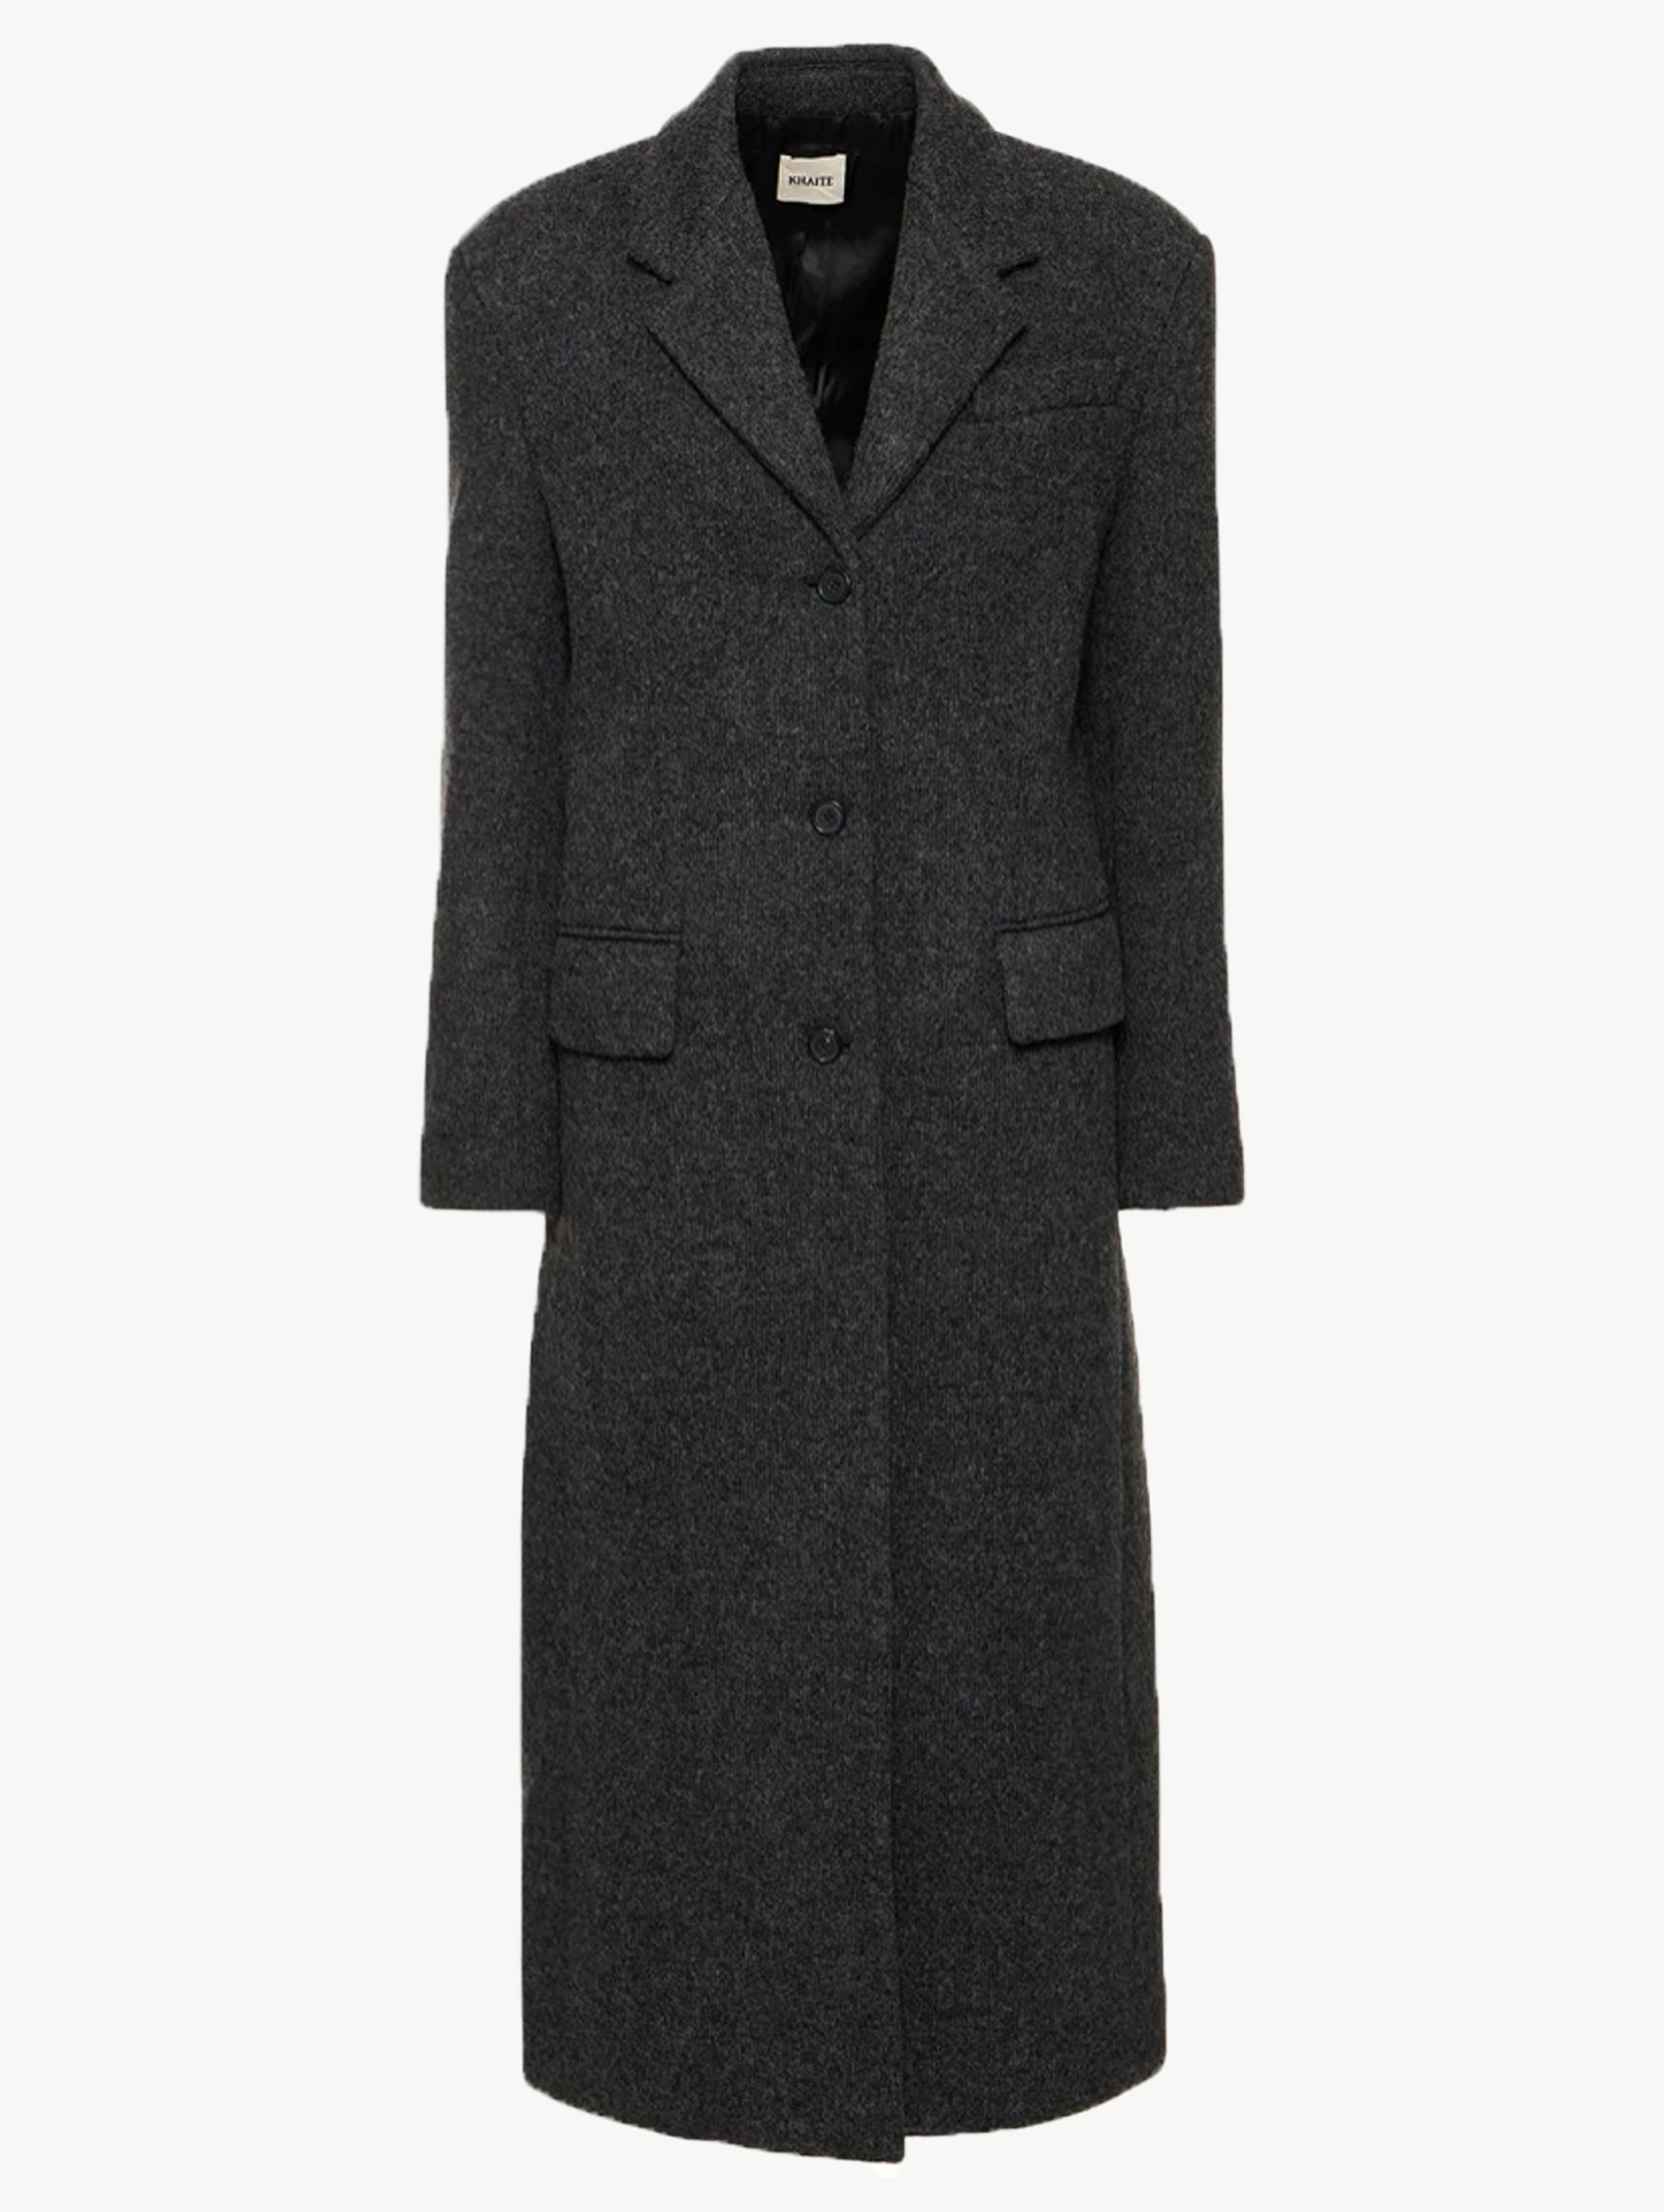 Bontin wool-blend longline coat